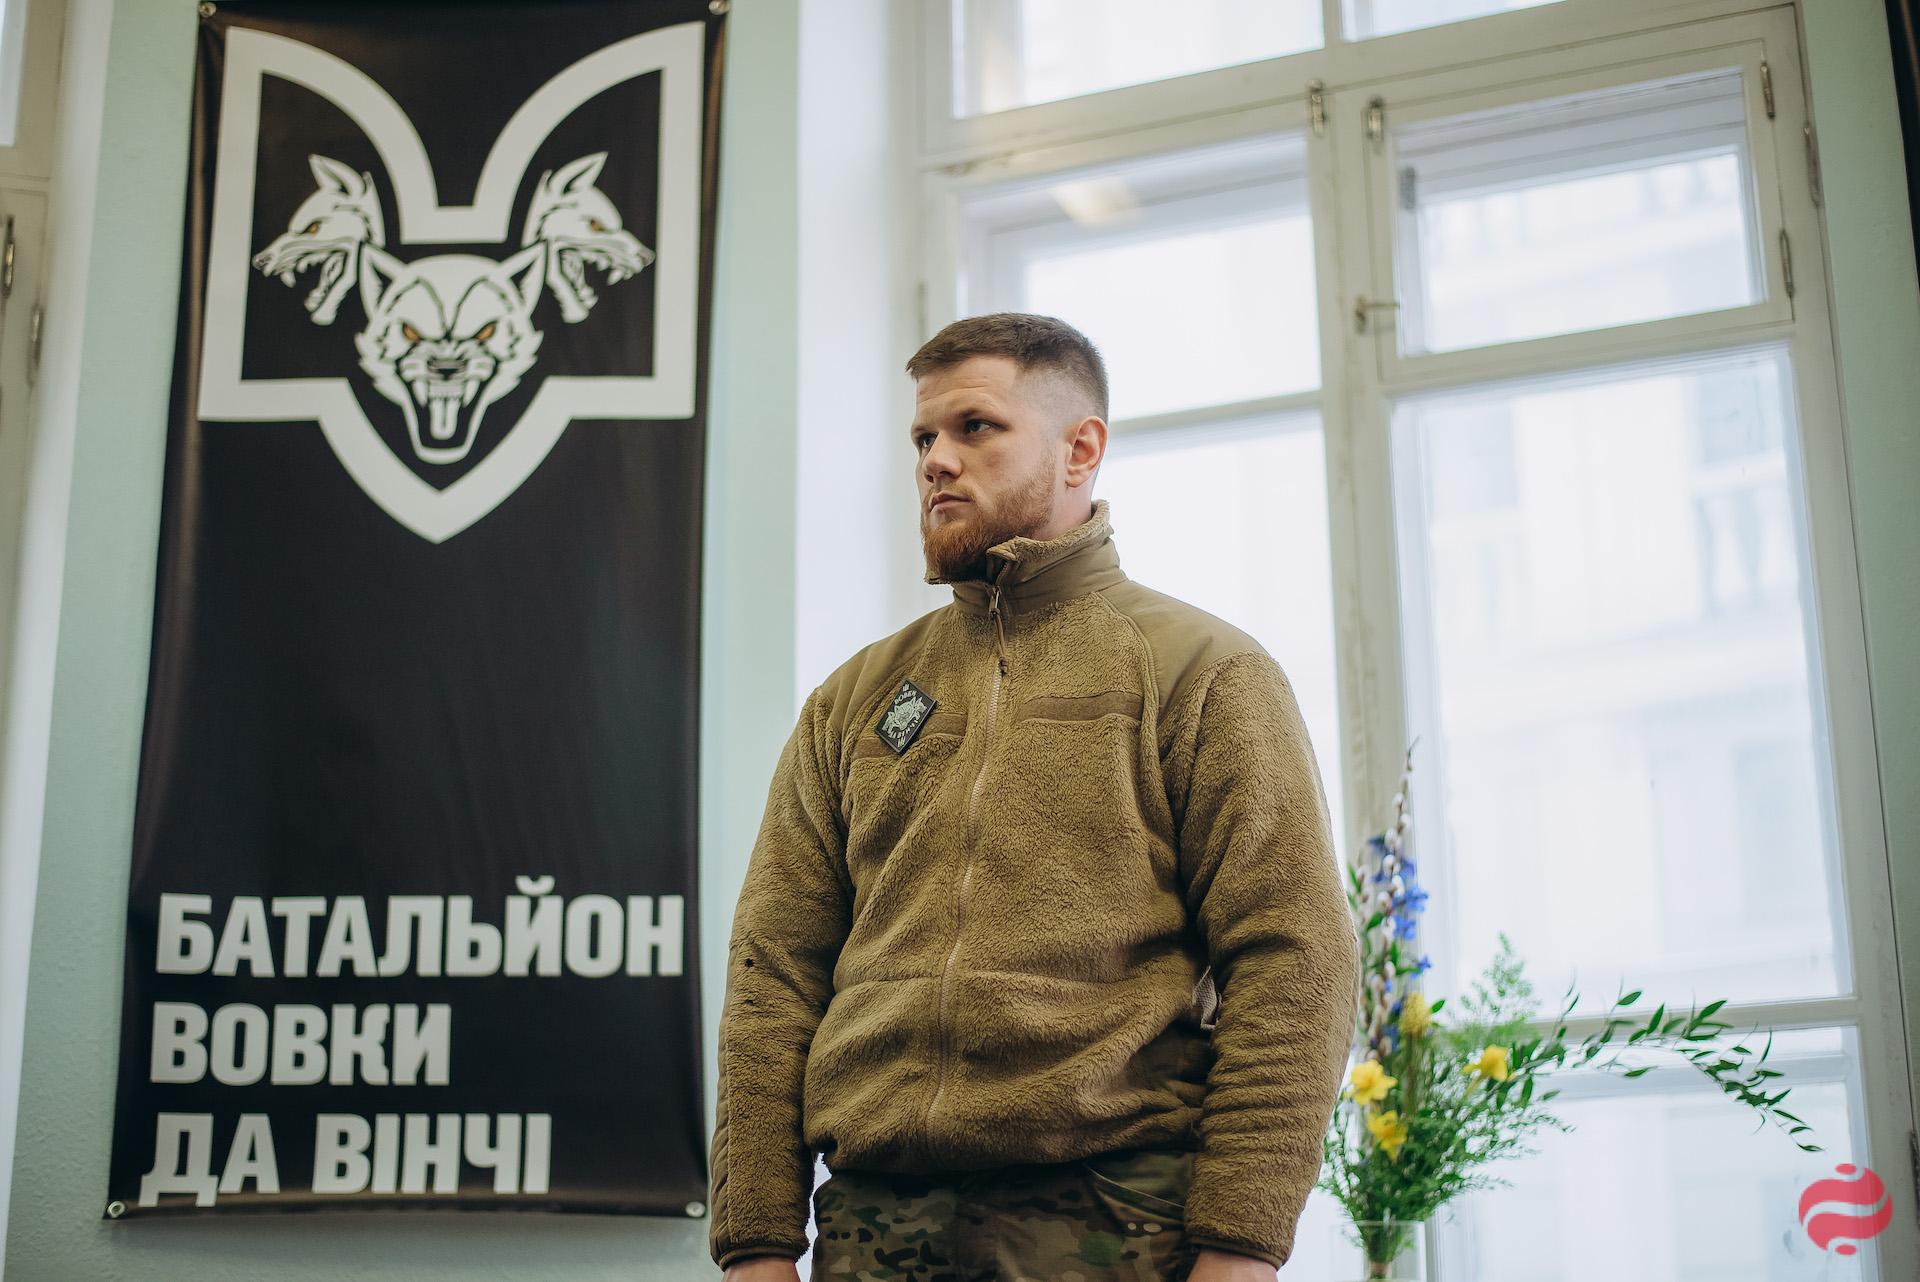 "Волки Да Винчи". LIGA.net побывала на открытии рекрутингового центра в Киеве – фото